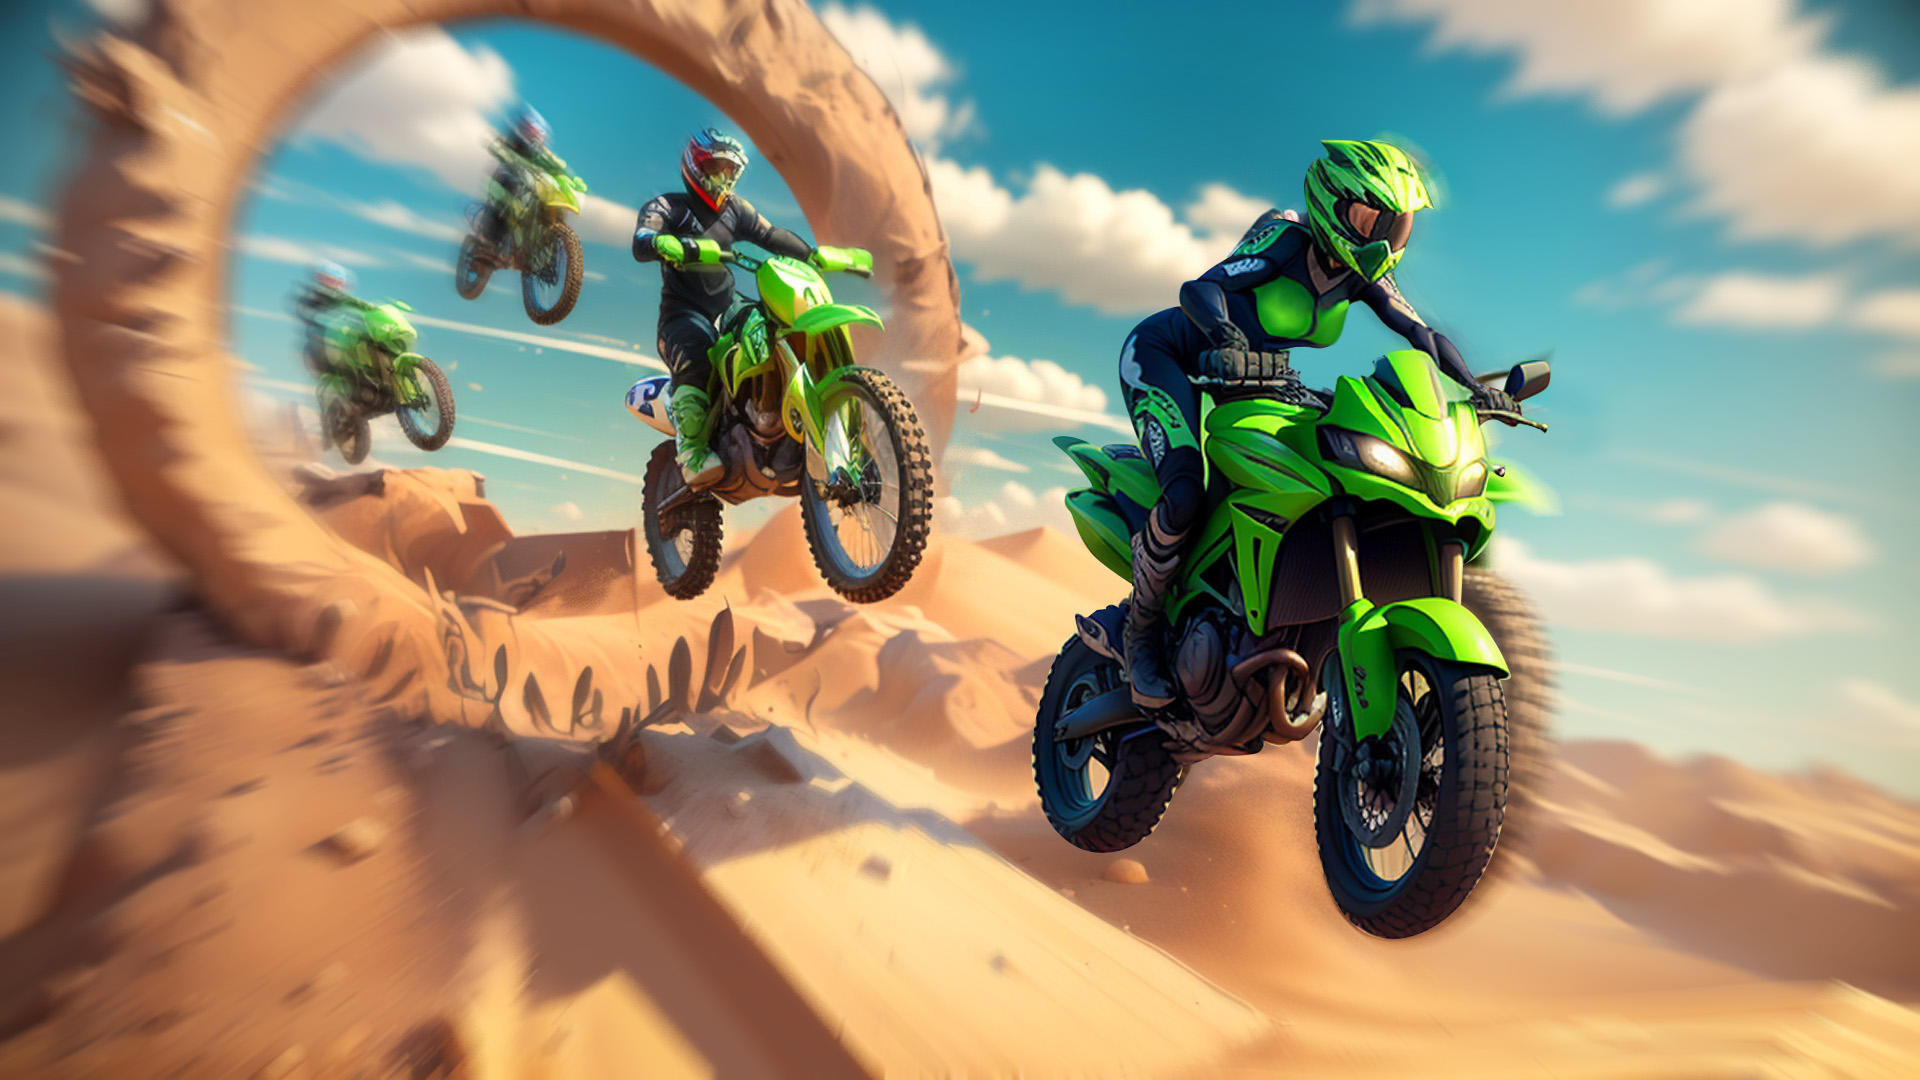 Screenshot 1 of Motocross Bike Racing Game 1.4.6